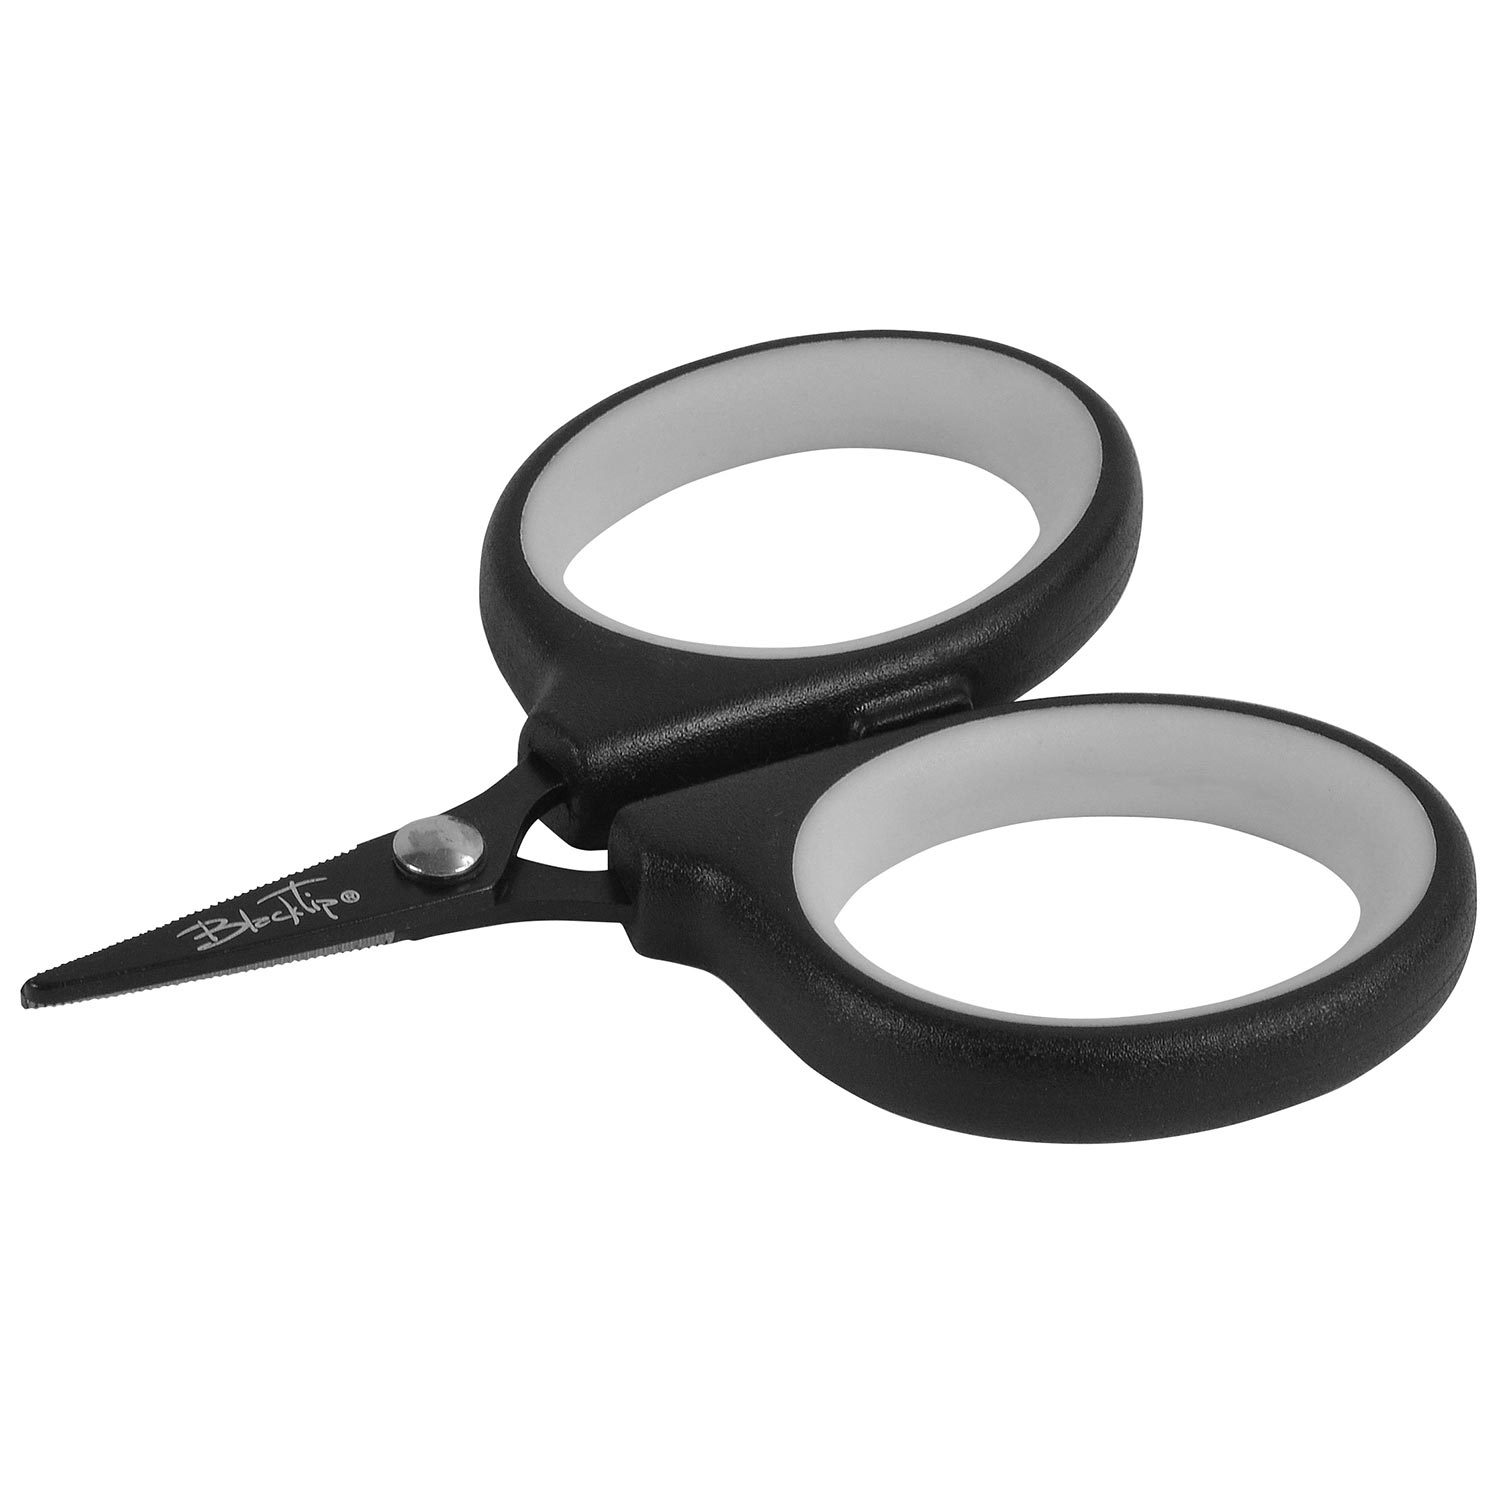 BLACKTIP 3 3/4 NonStick Braid Scissors